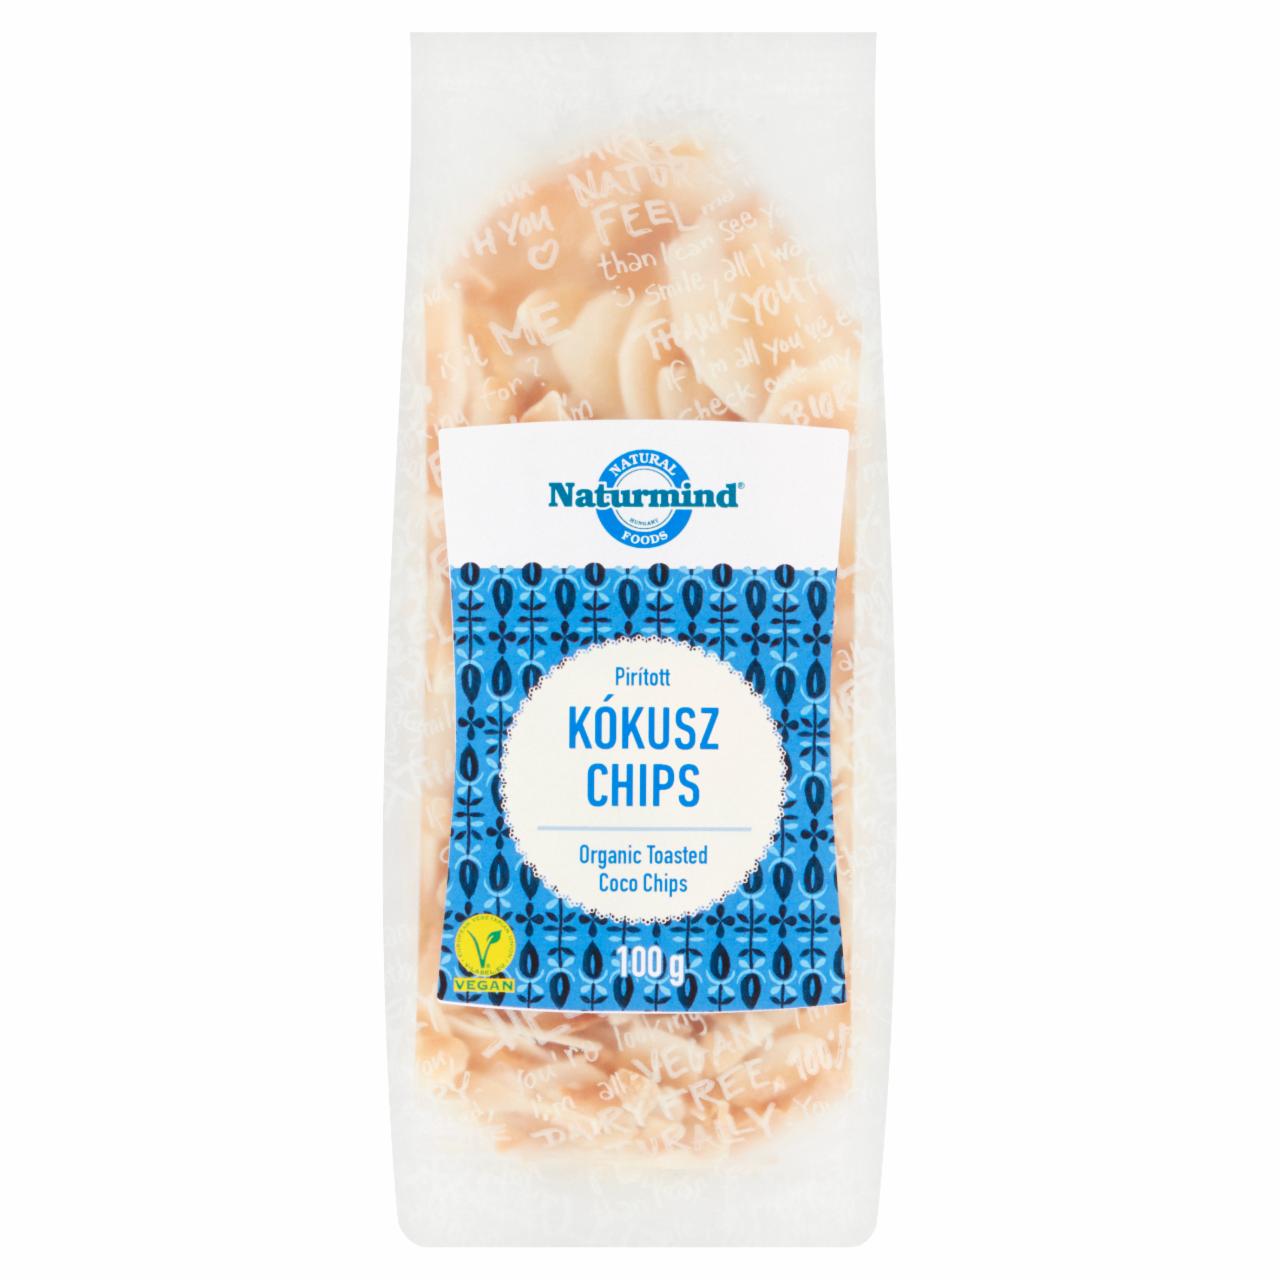 Képek - Naturmind pirított kókusz chips 100 g